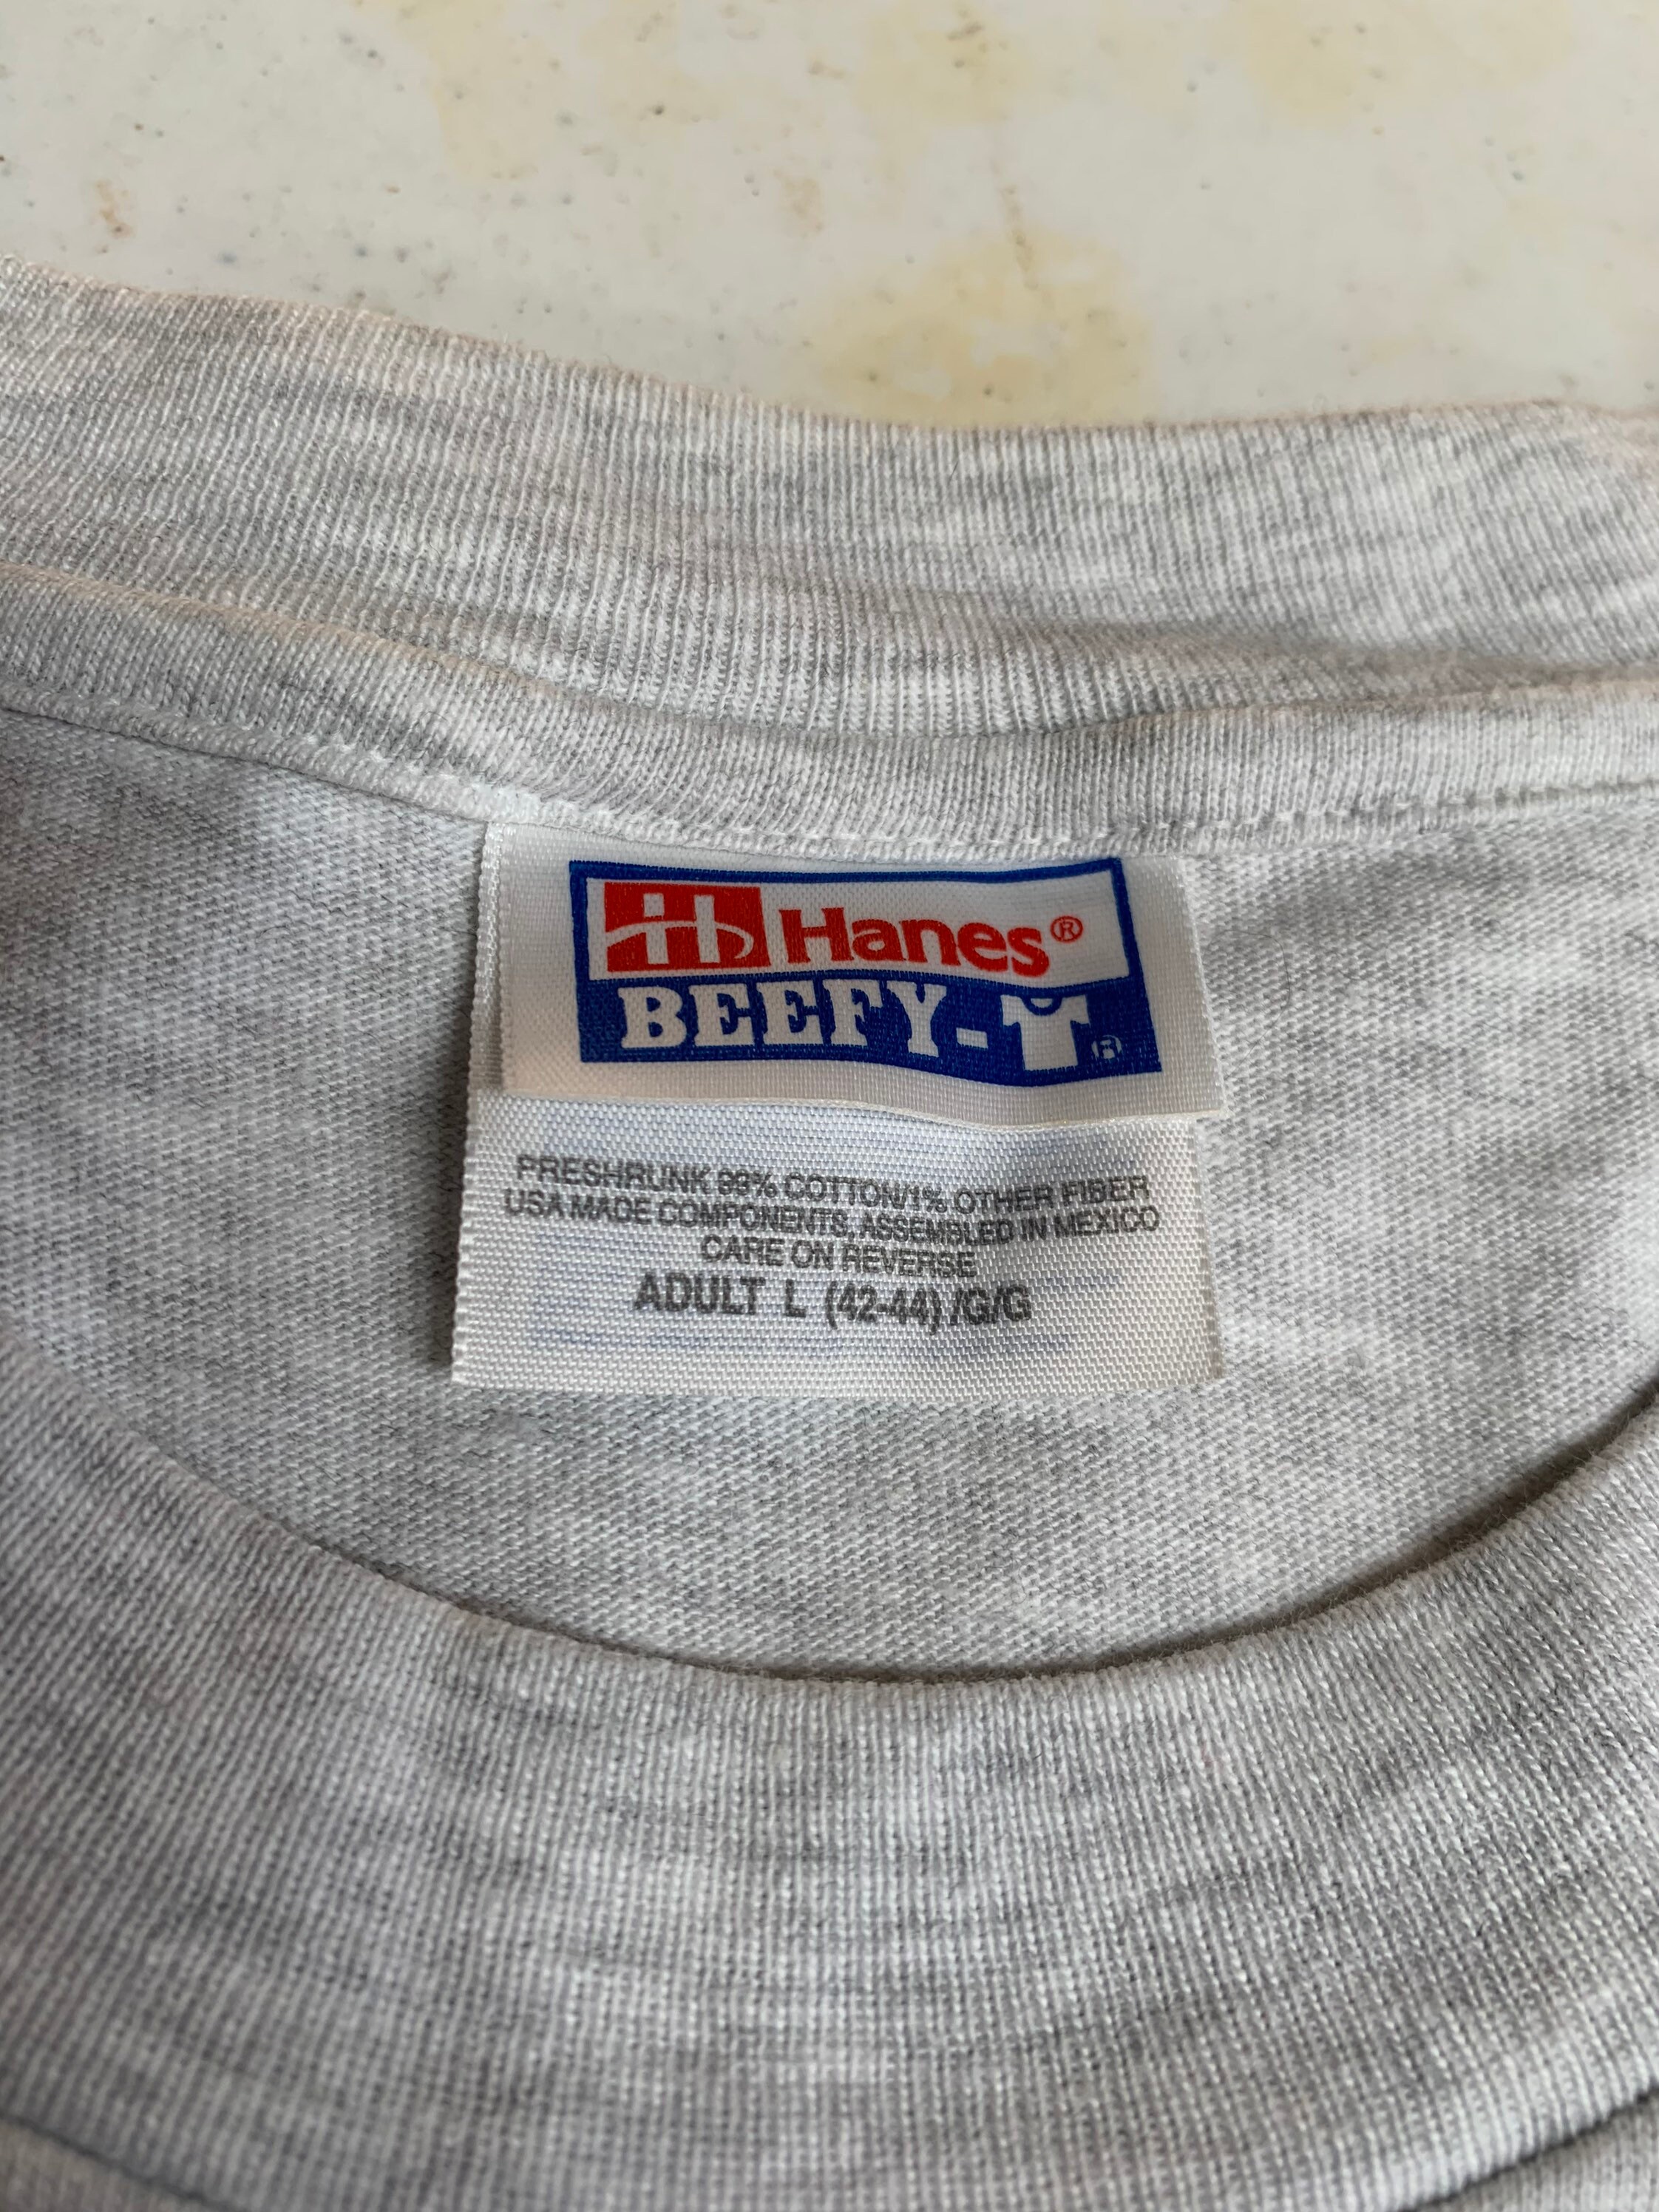 Vintage Indiana Basketball Legends ABA T Shirt Size Large - Etsy